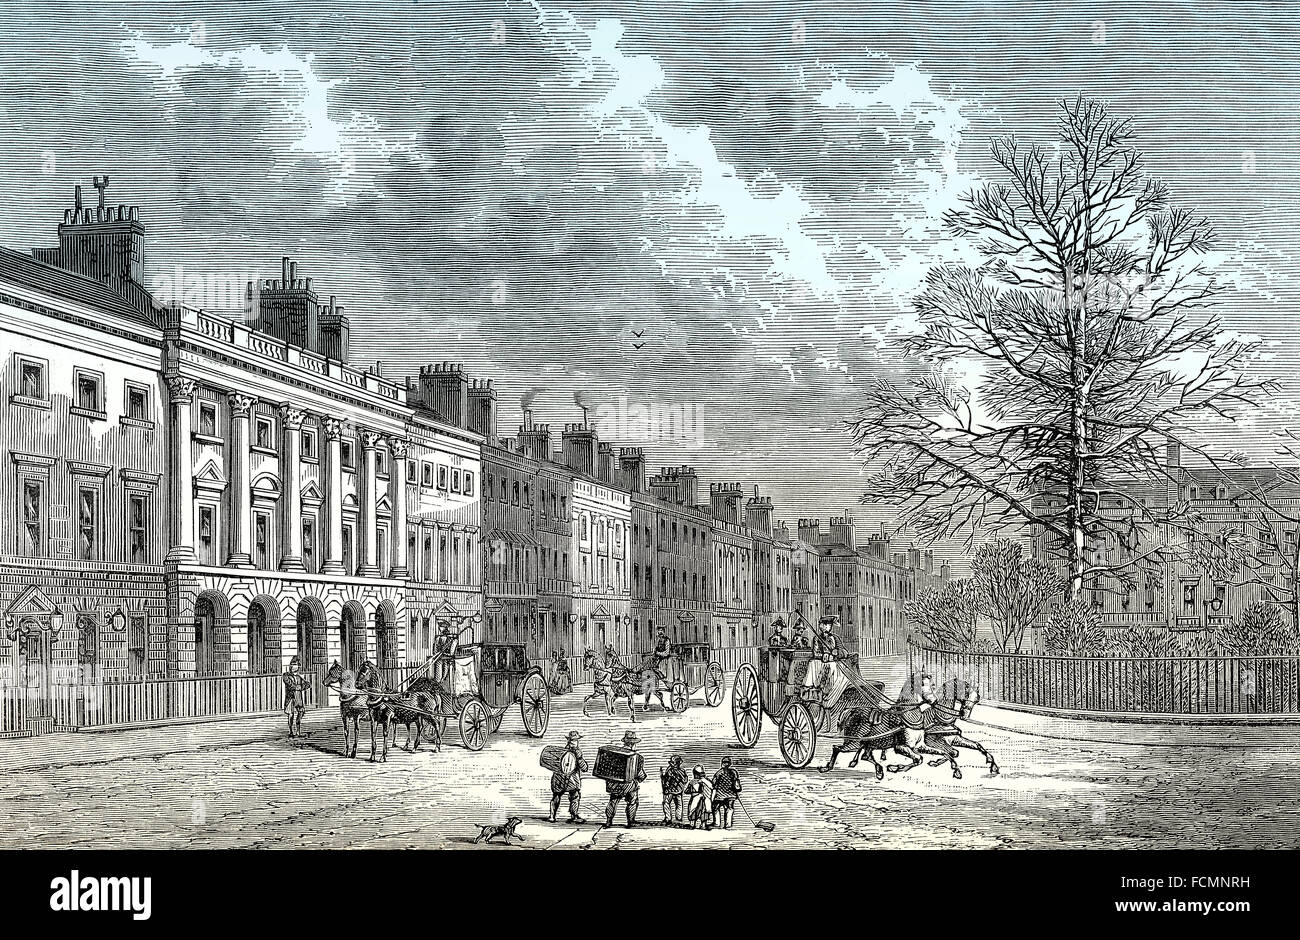 Le côté nord de Grosvenor Square, 18e siècle, Mayfair, West End de Londres, ville de Westminster, en Angleterre Banque D'Images